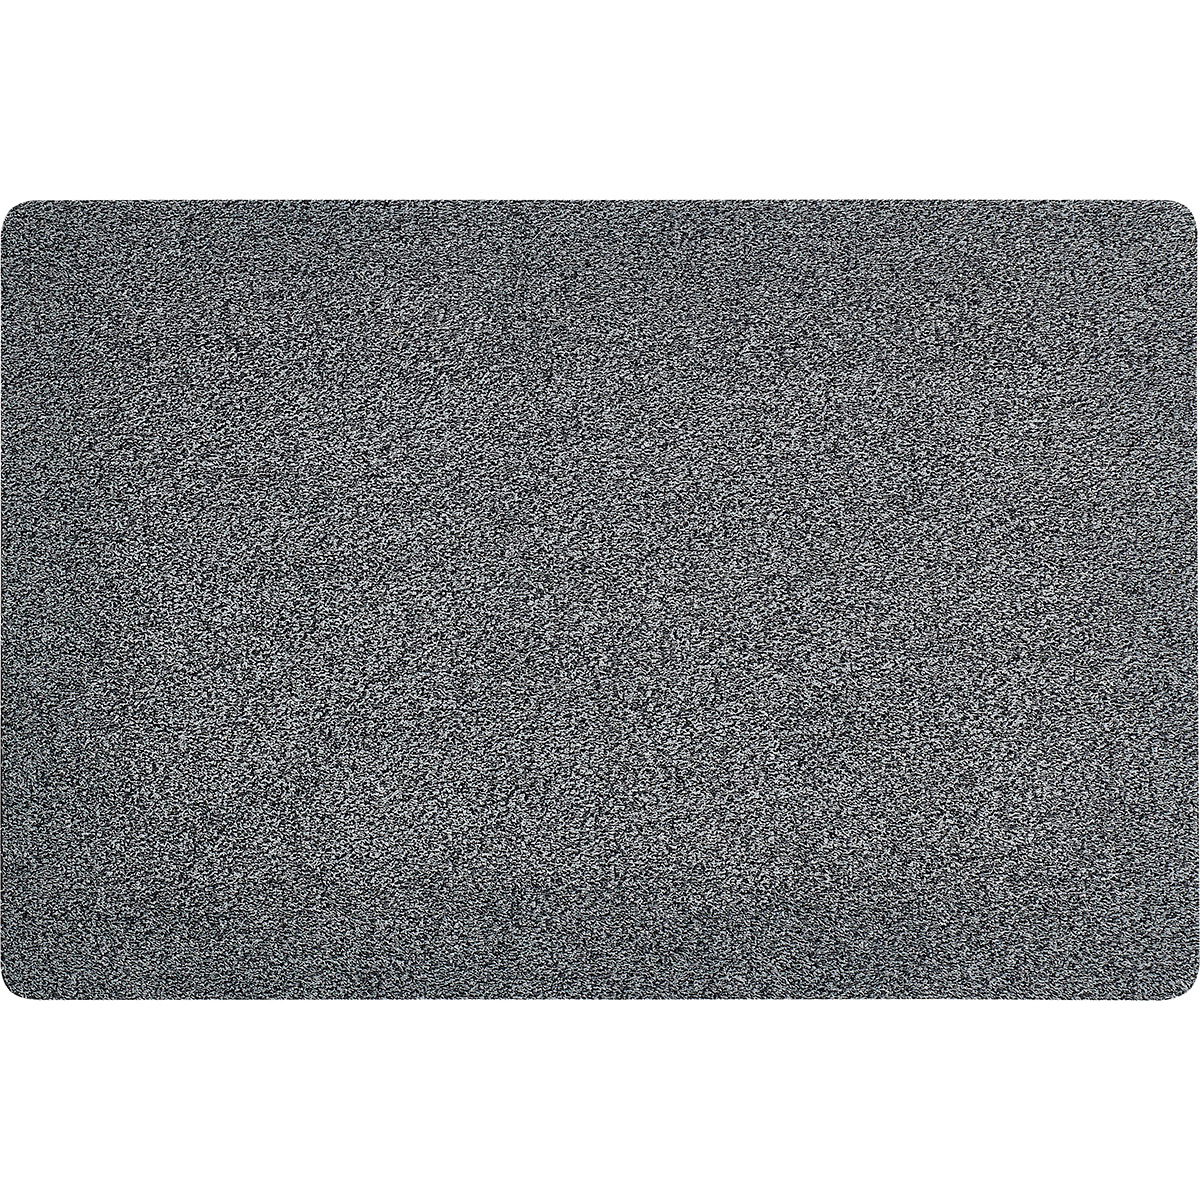 HOMCOM Fußmatte aus Baumwolle waschbar Dunkelgrau 120 x 80 x 0,45 cm   Aoso günstig online kaufen